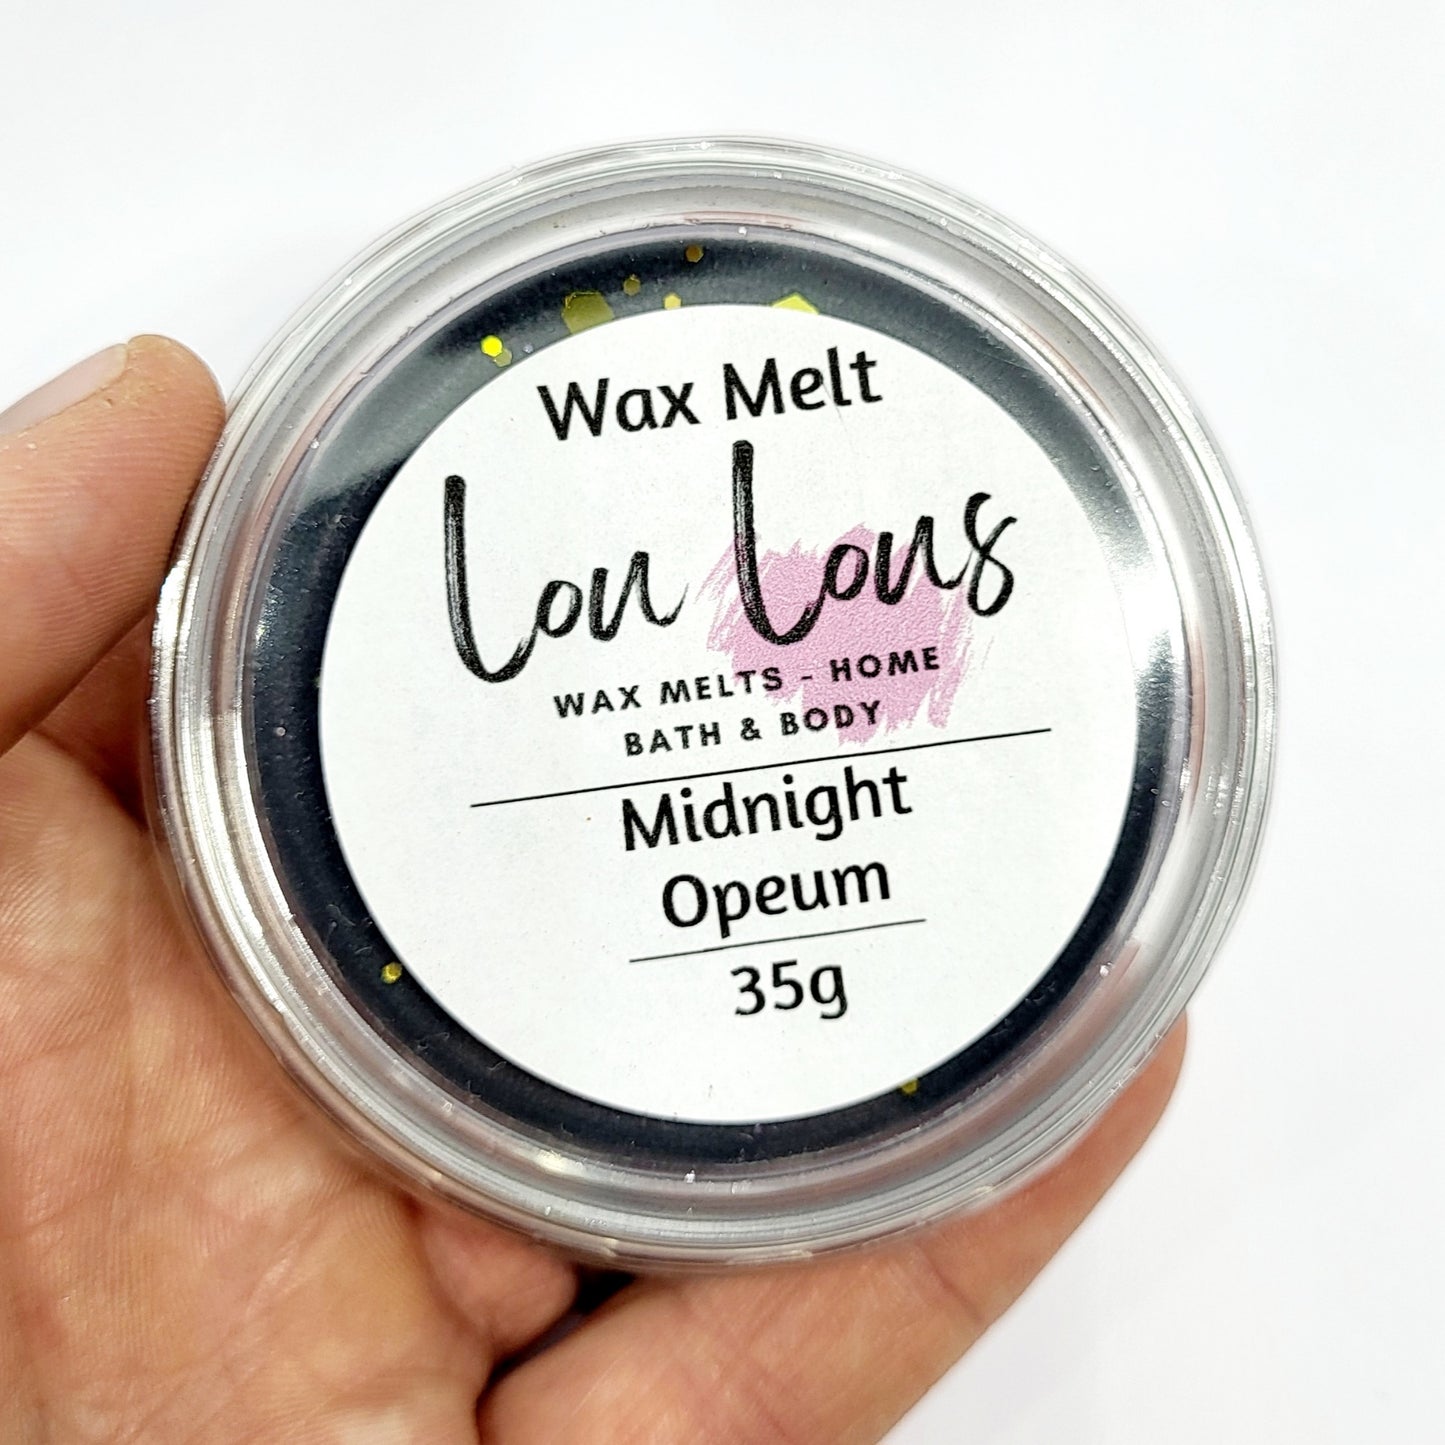 Midnight Opeum Wax Melt Pot